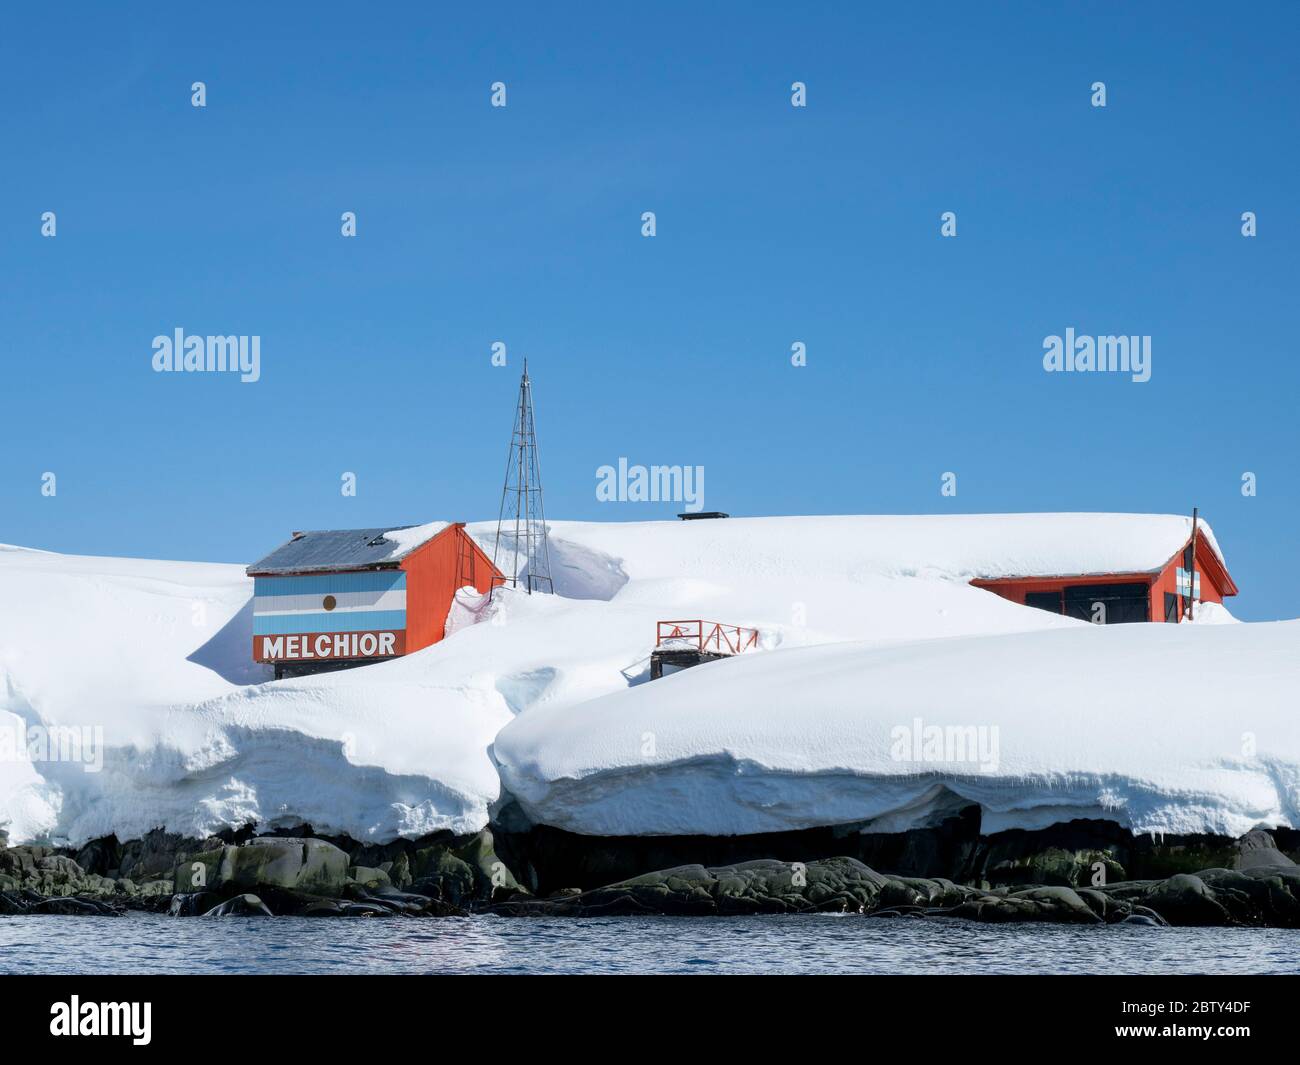 La neige couvre la base de recherche Argentine dans les îles Melchior, la baie de Dalmann, l'Antarctique et les régions polaires Banque D'Images